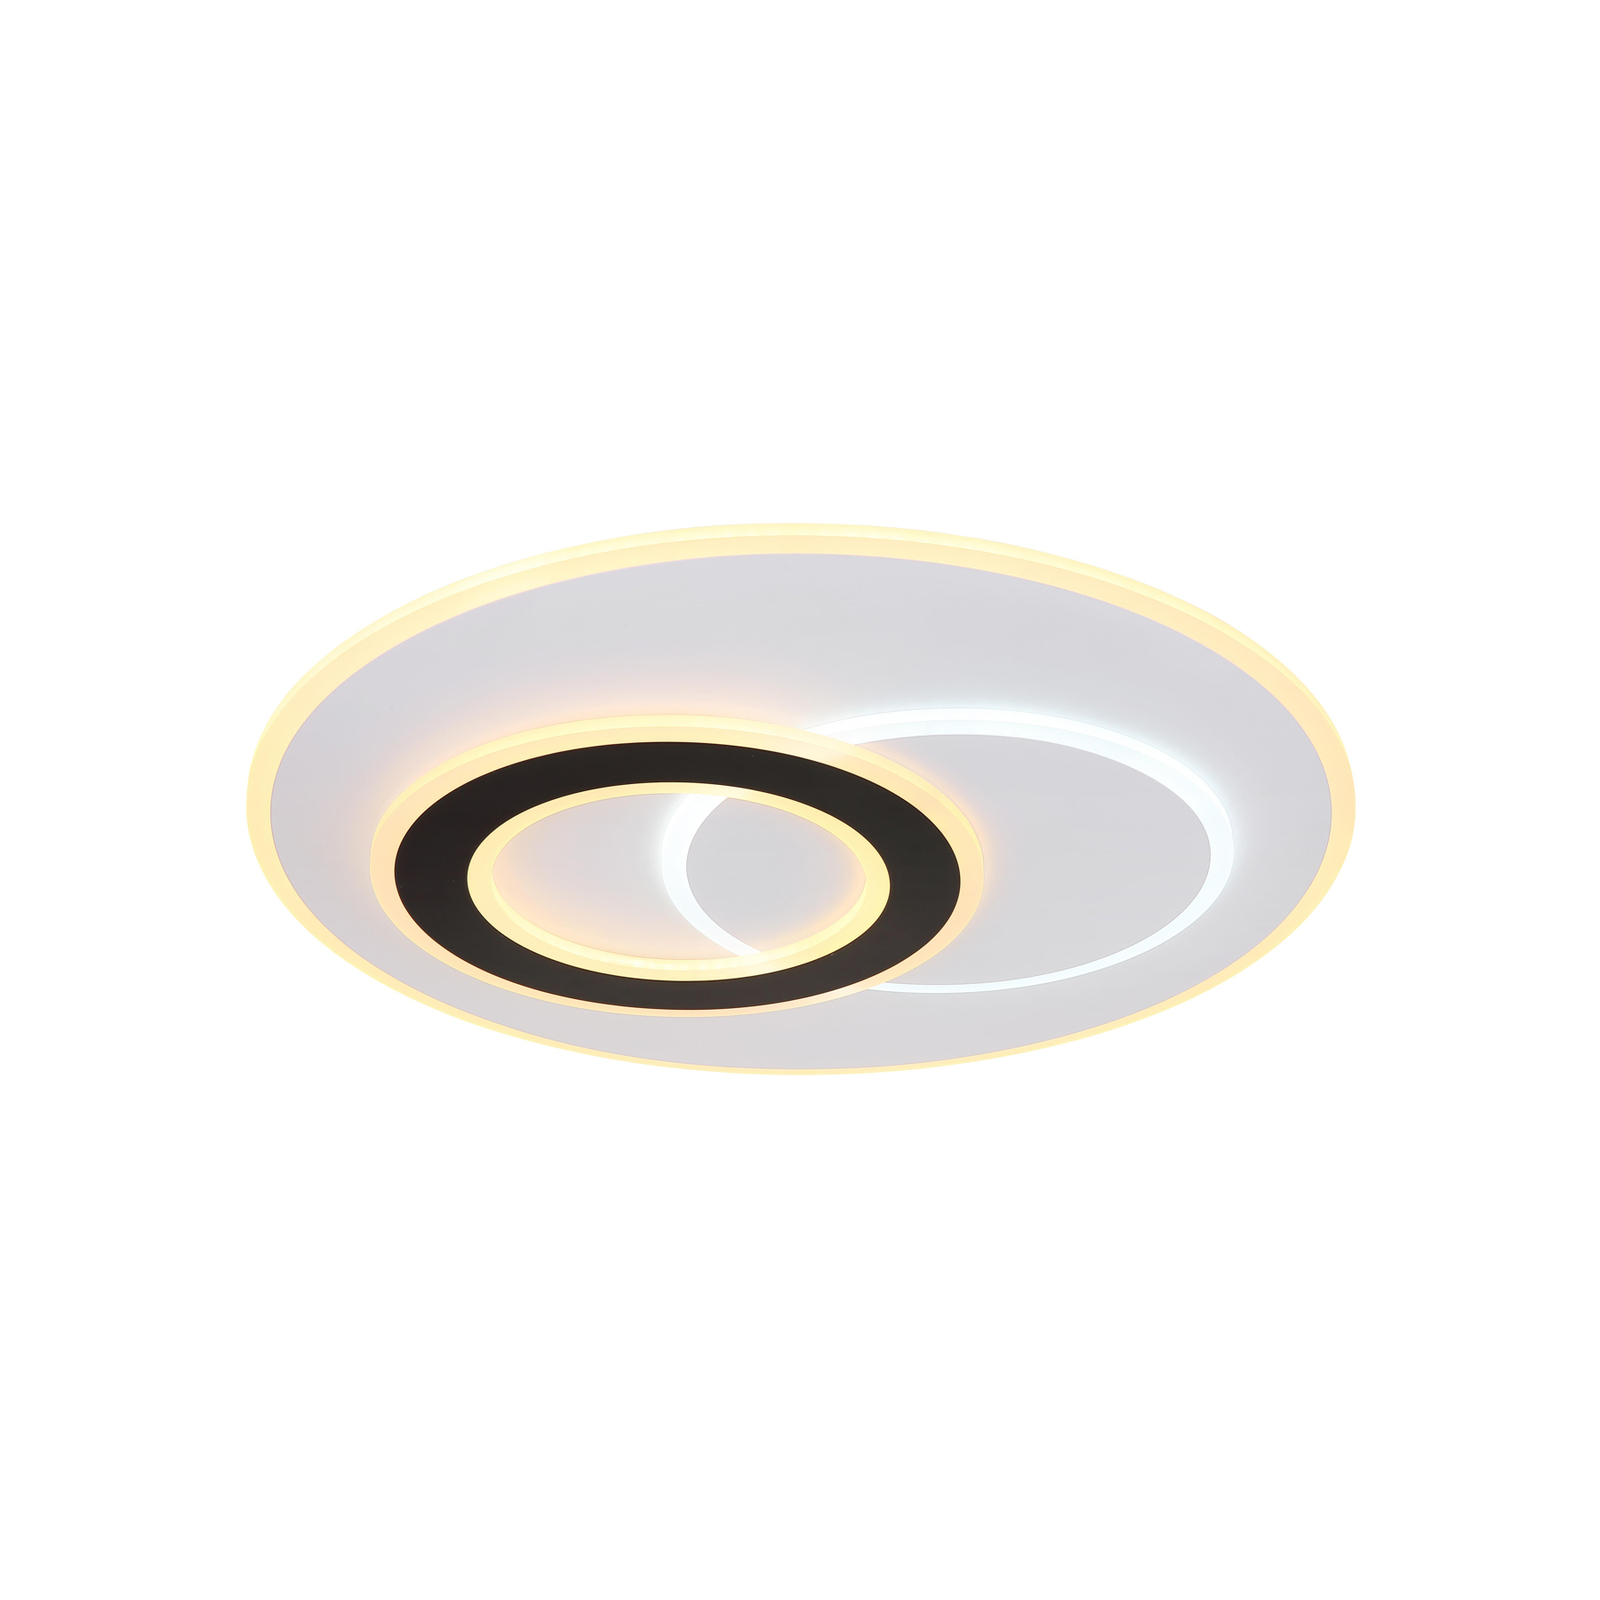 Smart LED stropno svjetlo Jacques, bijelo/crno, Ø 70 cm, CCT